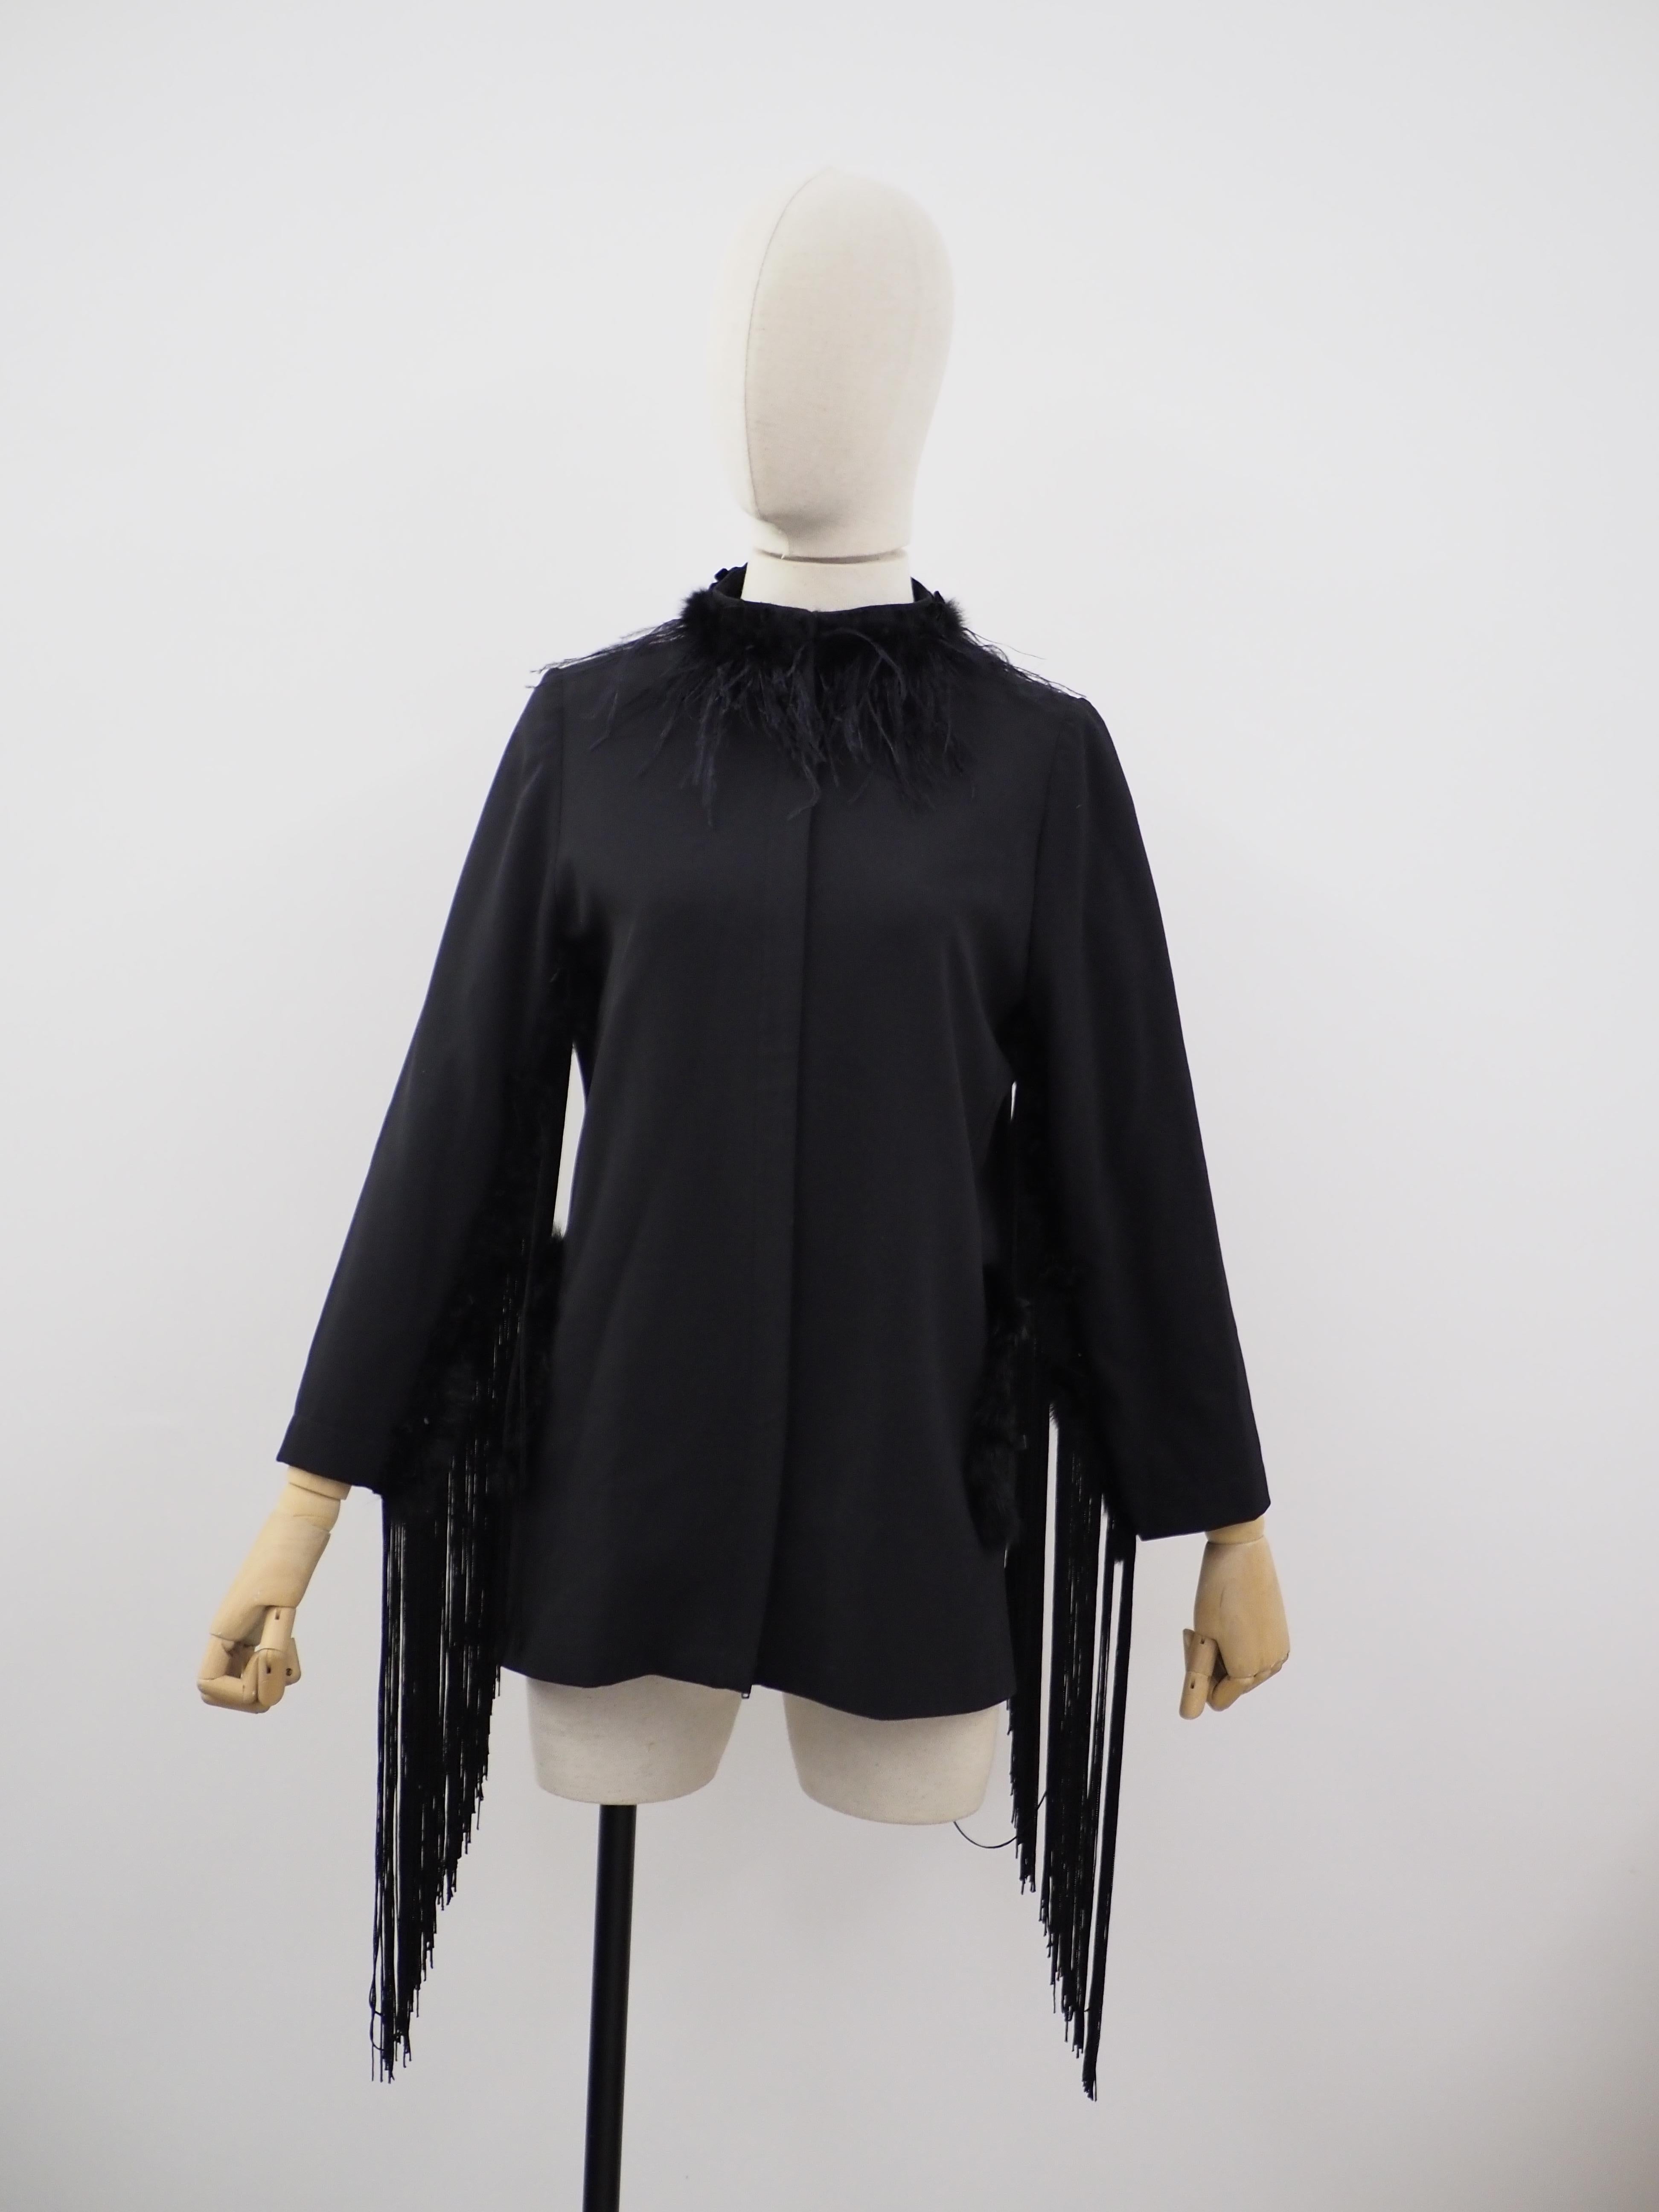 Soab Black fringes jacket
Soab recycled jacket
embellished with fringes all over